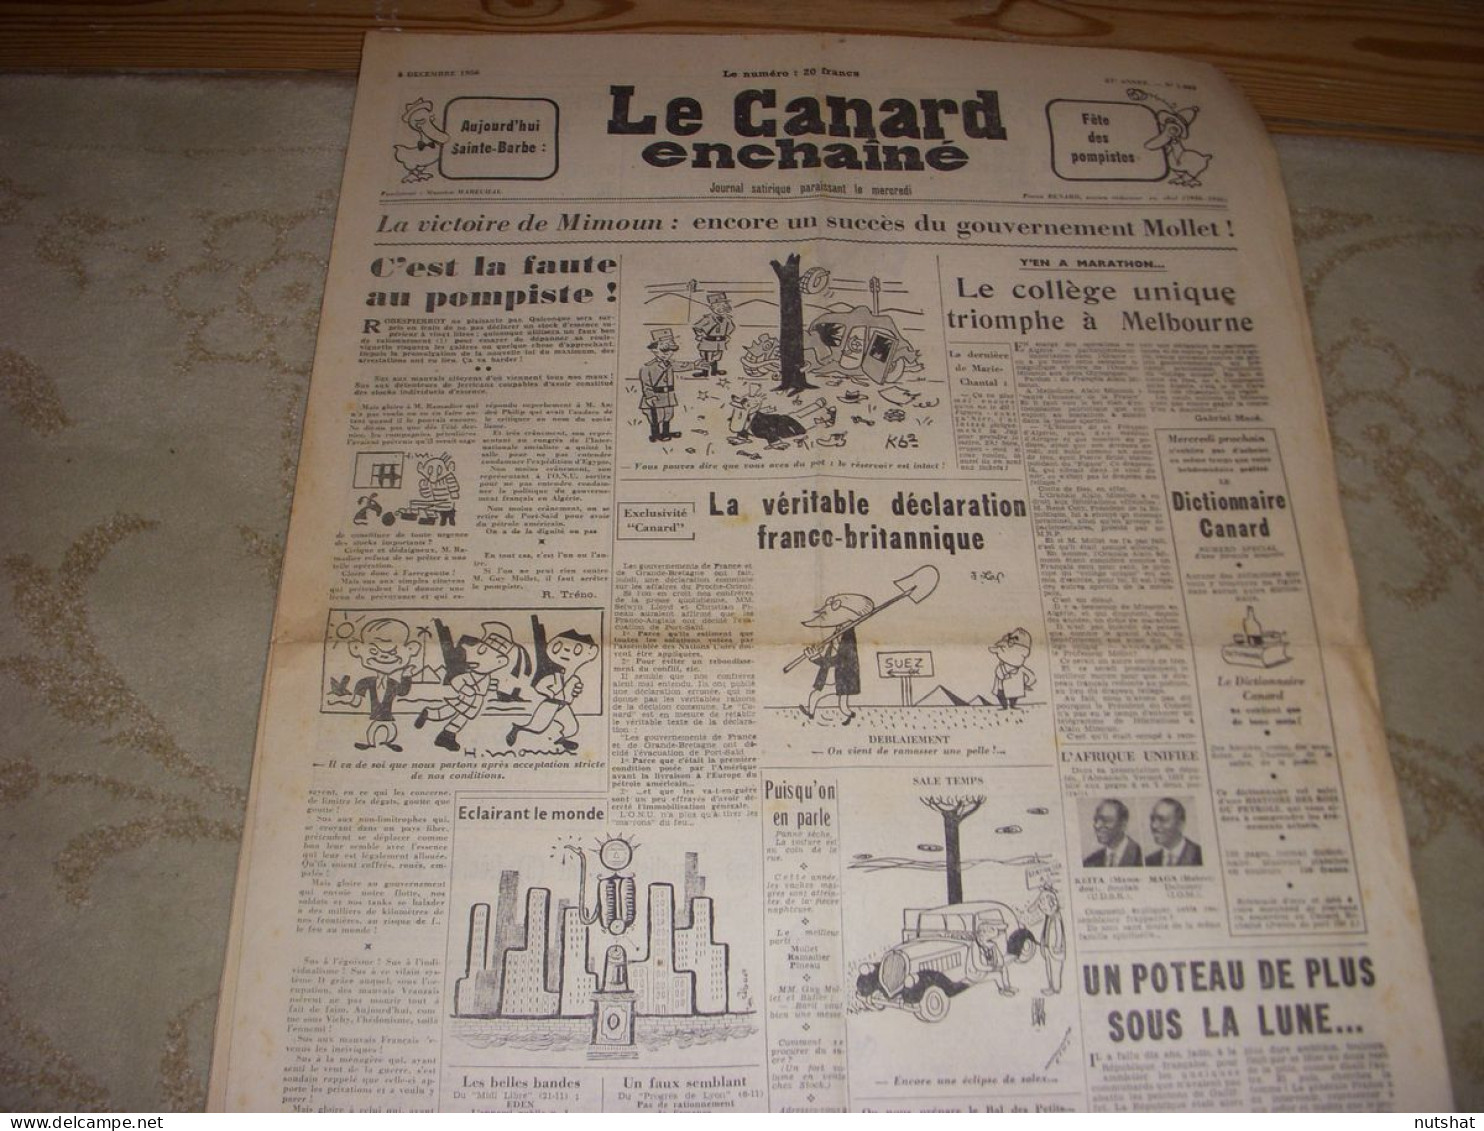 CANARD ENCHAINE 1885 05.12.1956 JO MELBOURNE MIMOUN La CHANSON FRANCAISE - Politiek